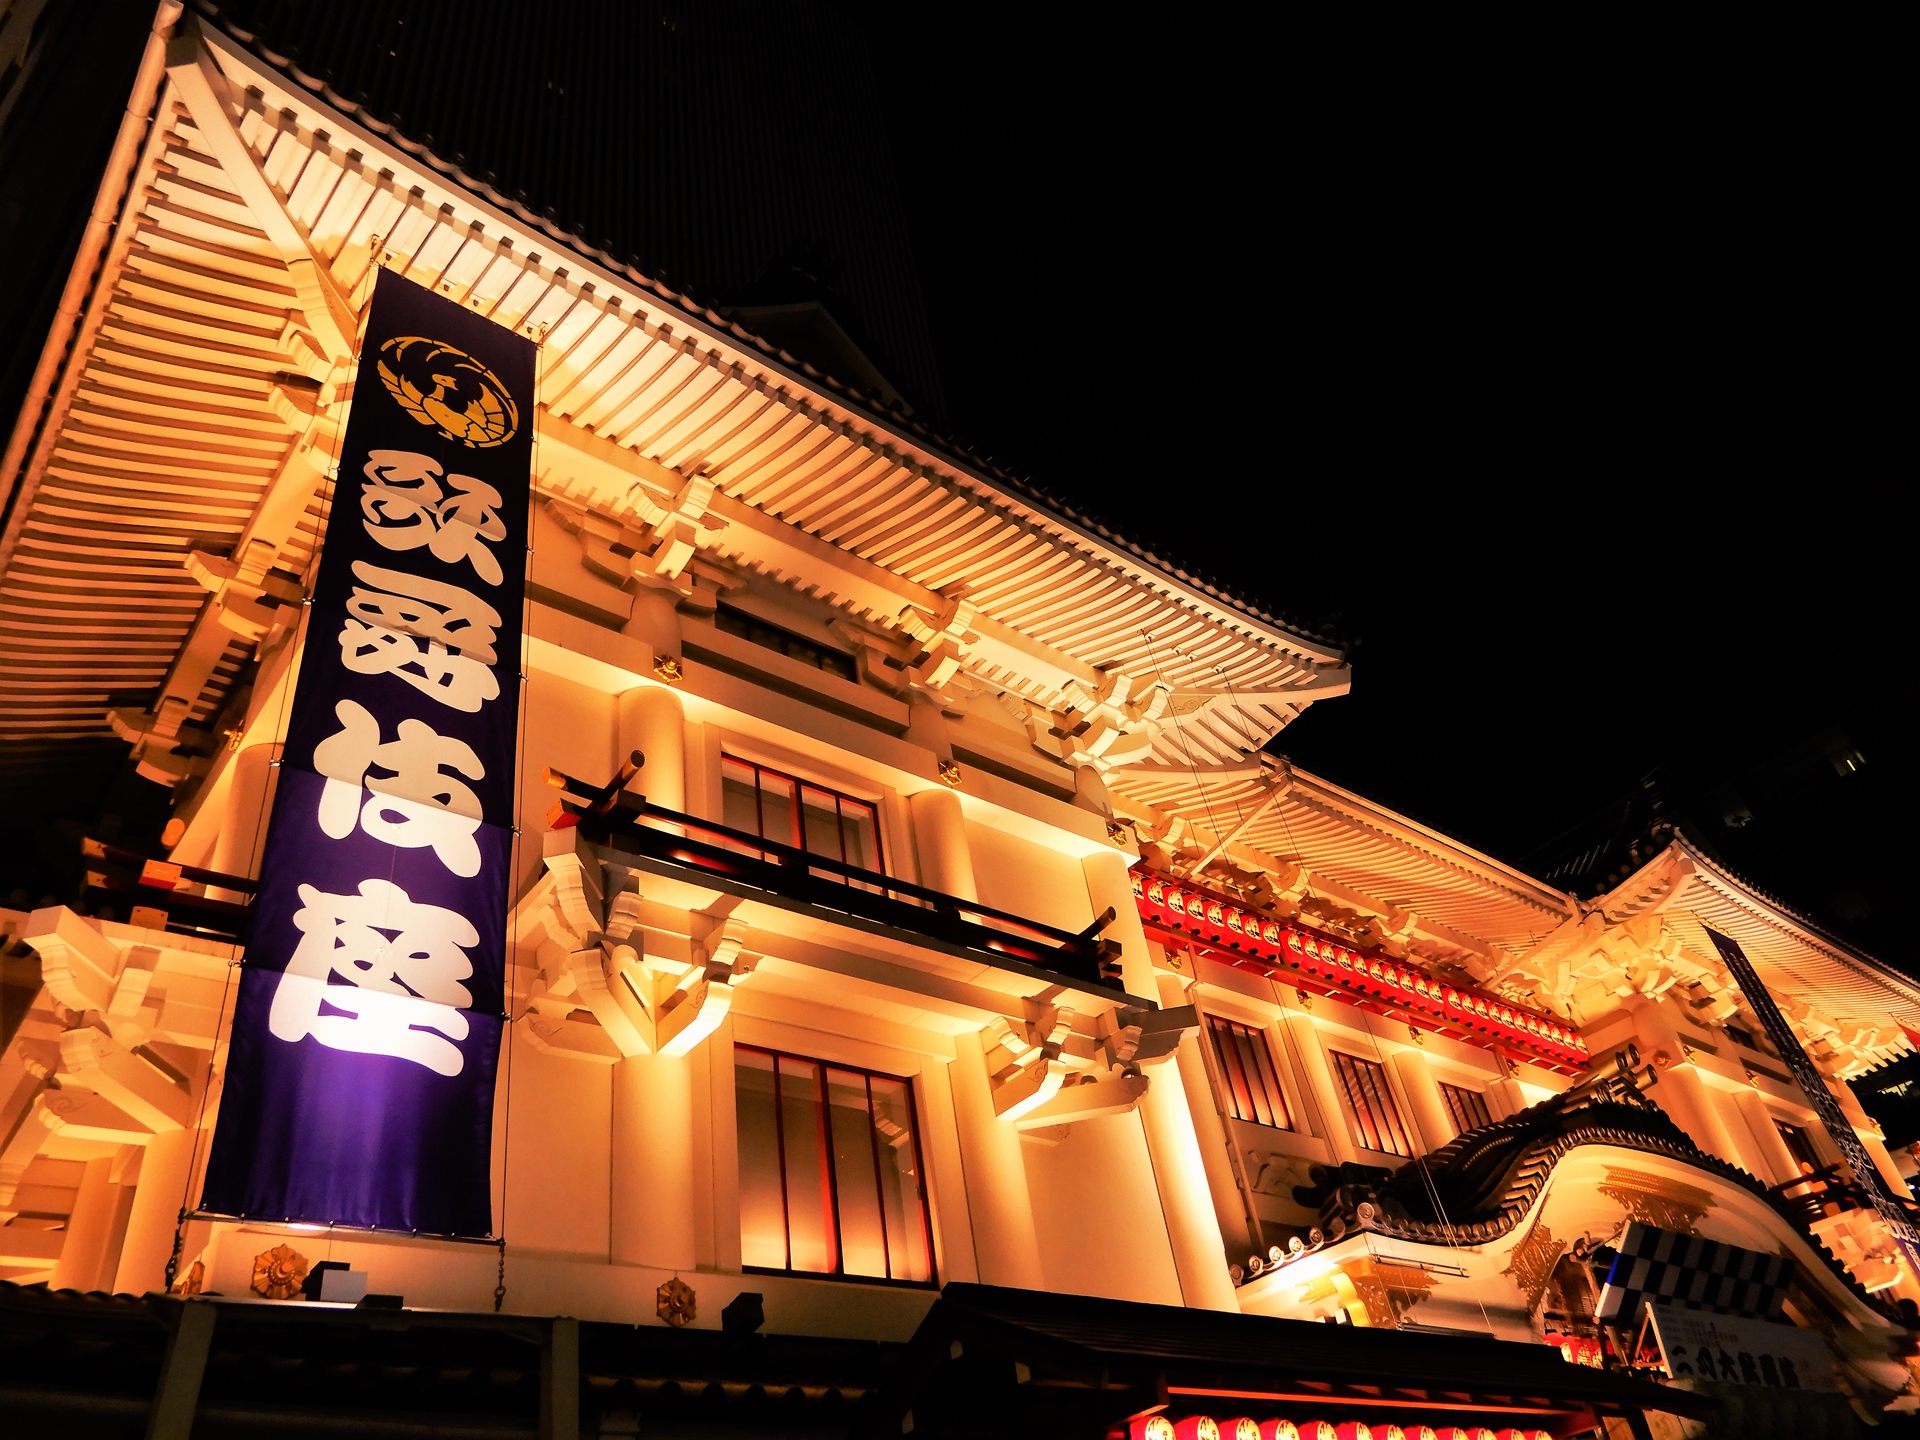 夜景 花火 イルミ 歌舞伎座ライトアップ 壁紙19x1440 壁紙館